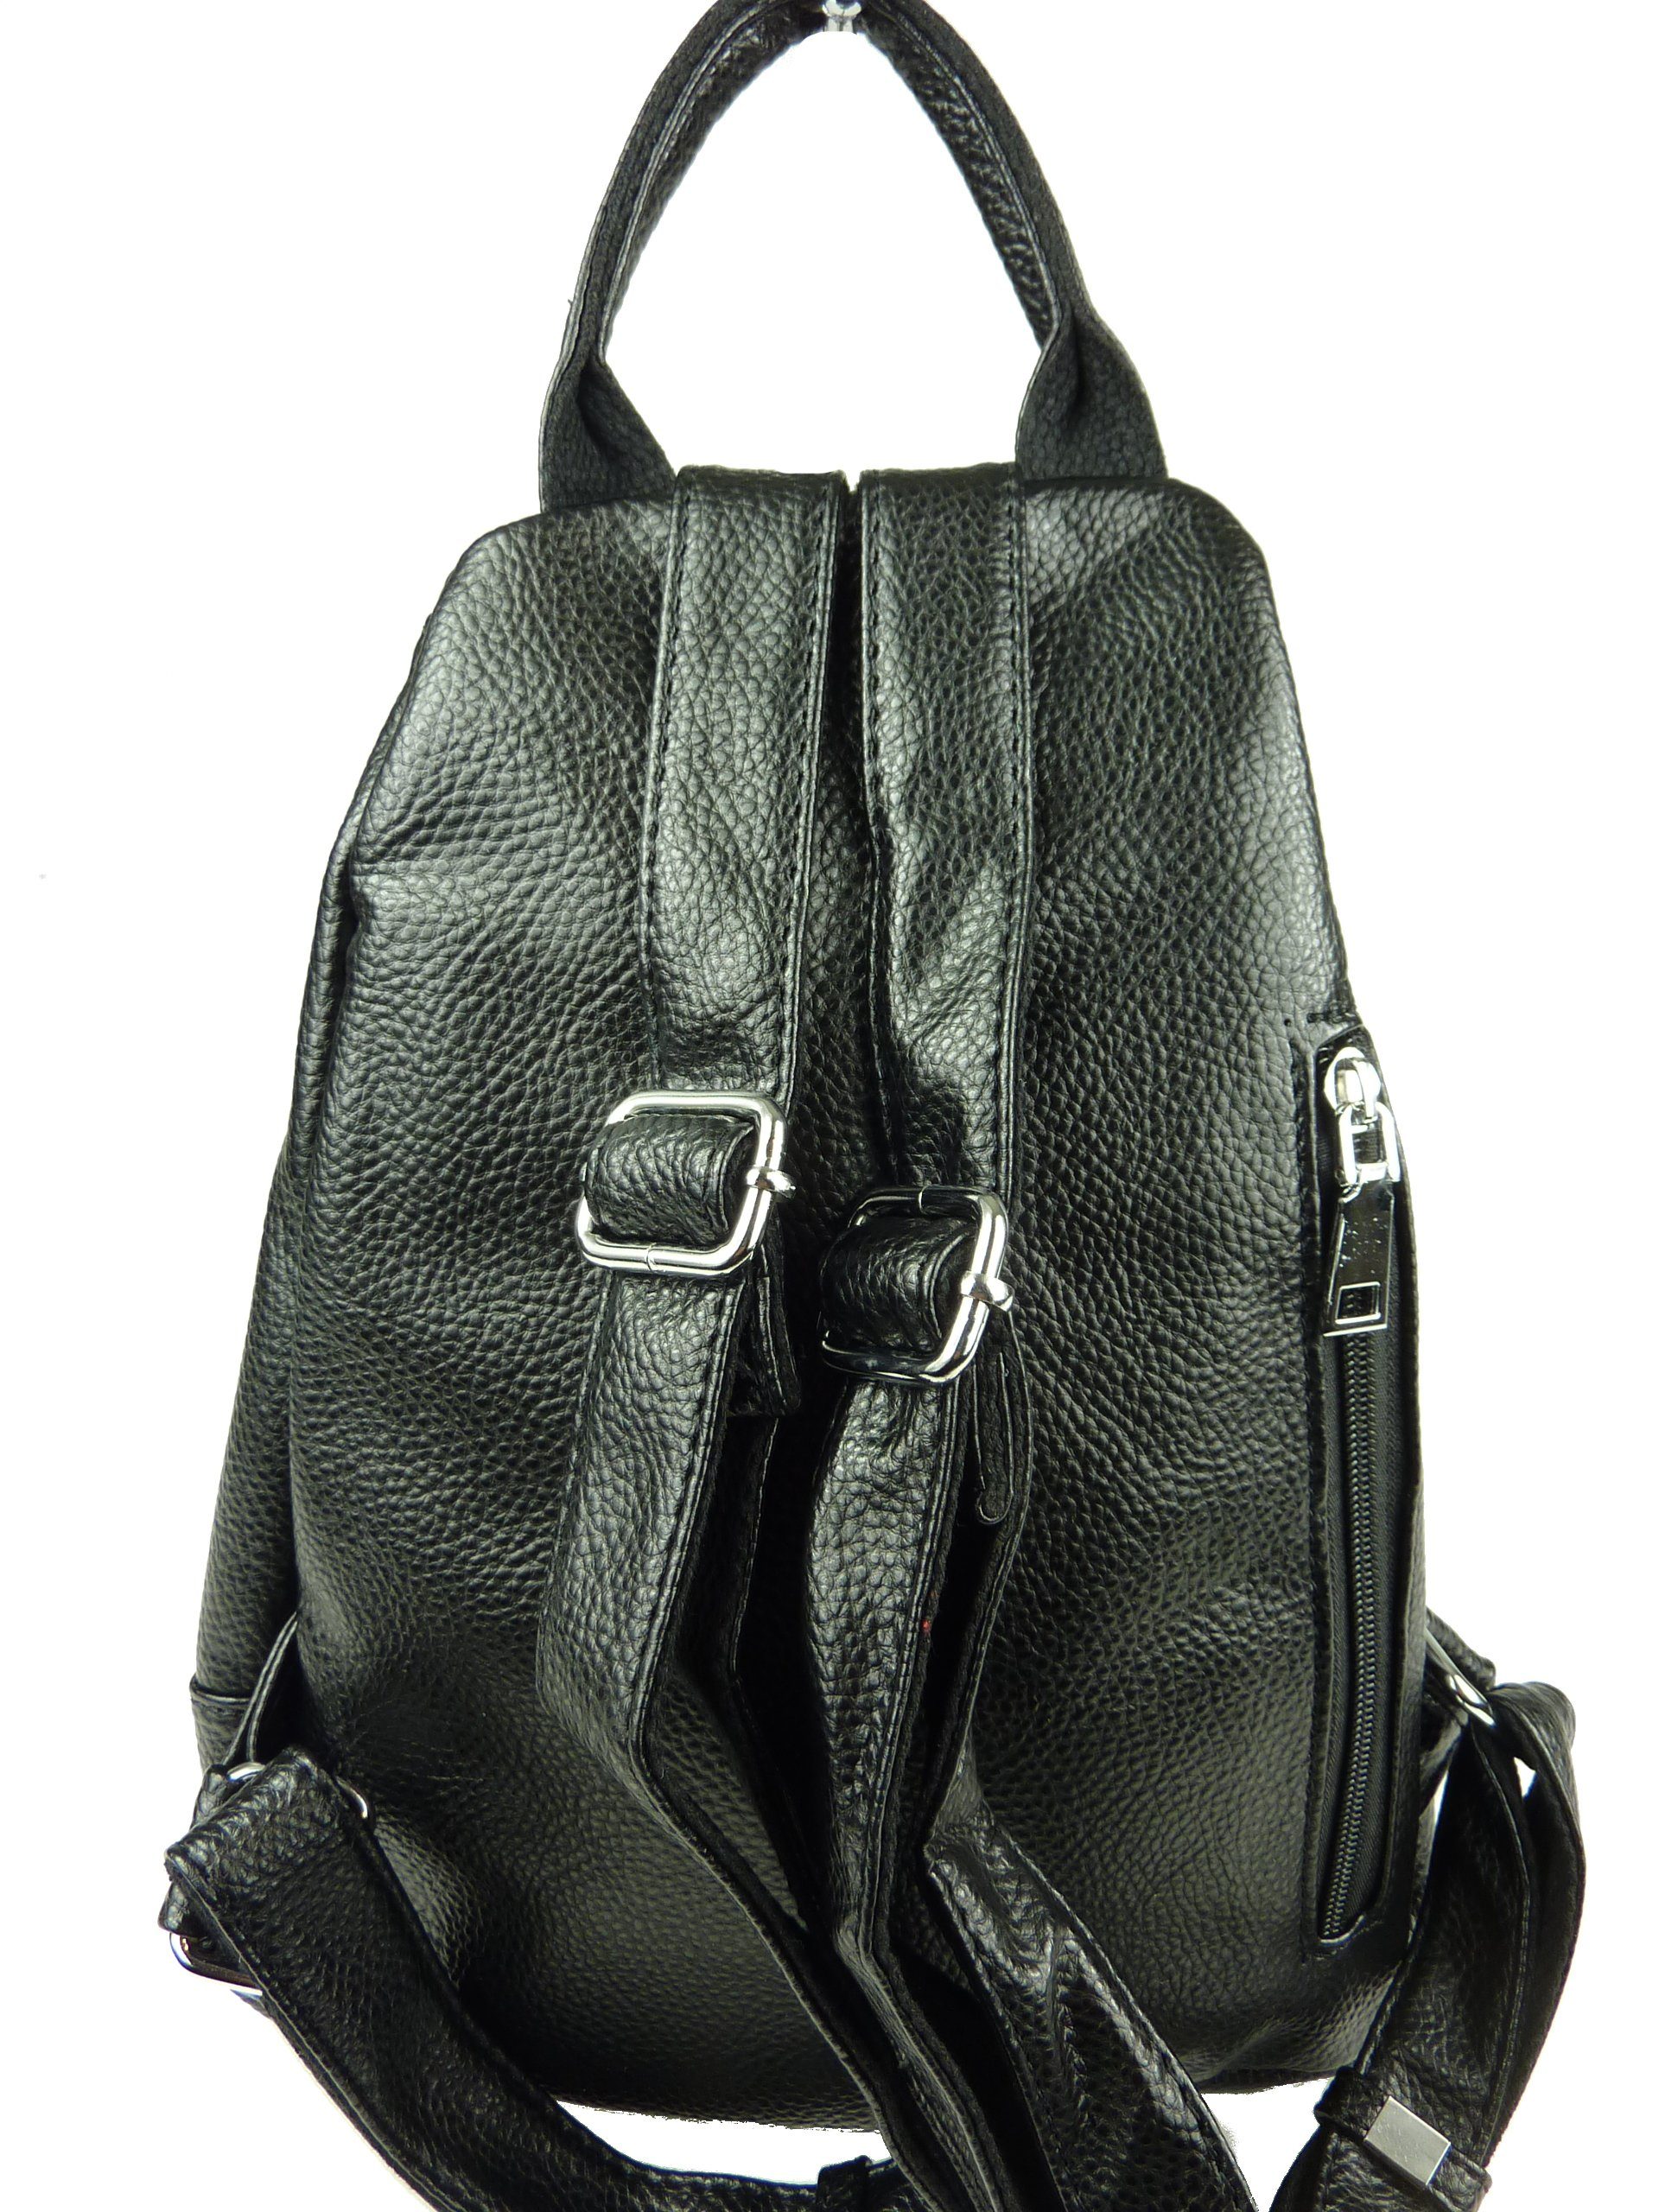 Taschen4life Schultertasche Damen Rucksack 069, schwarz - 83-6-24 modernes drops viele Fächer klassiche Design Rucksacktasche